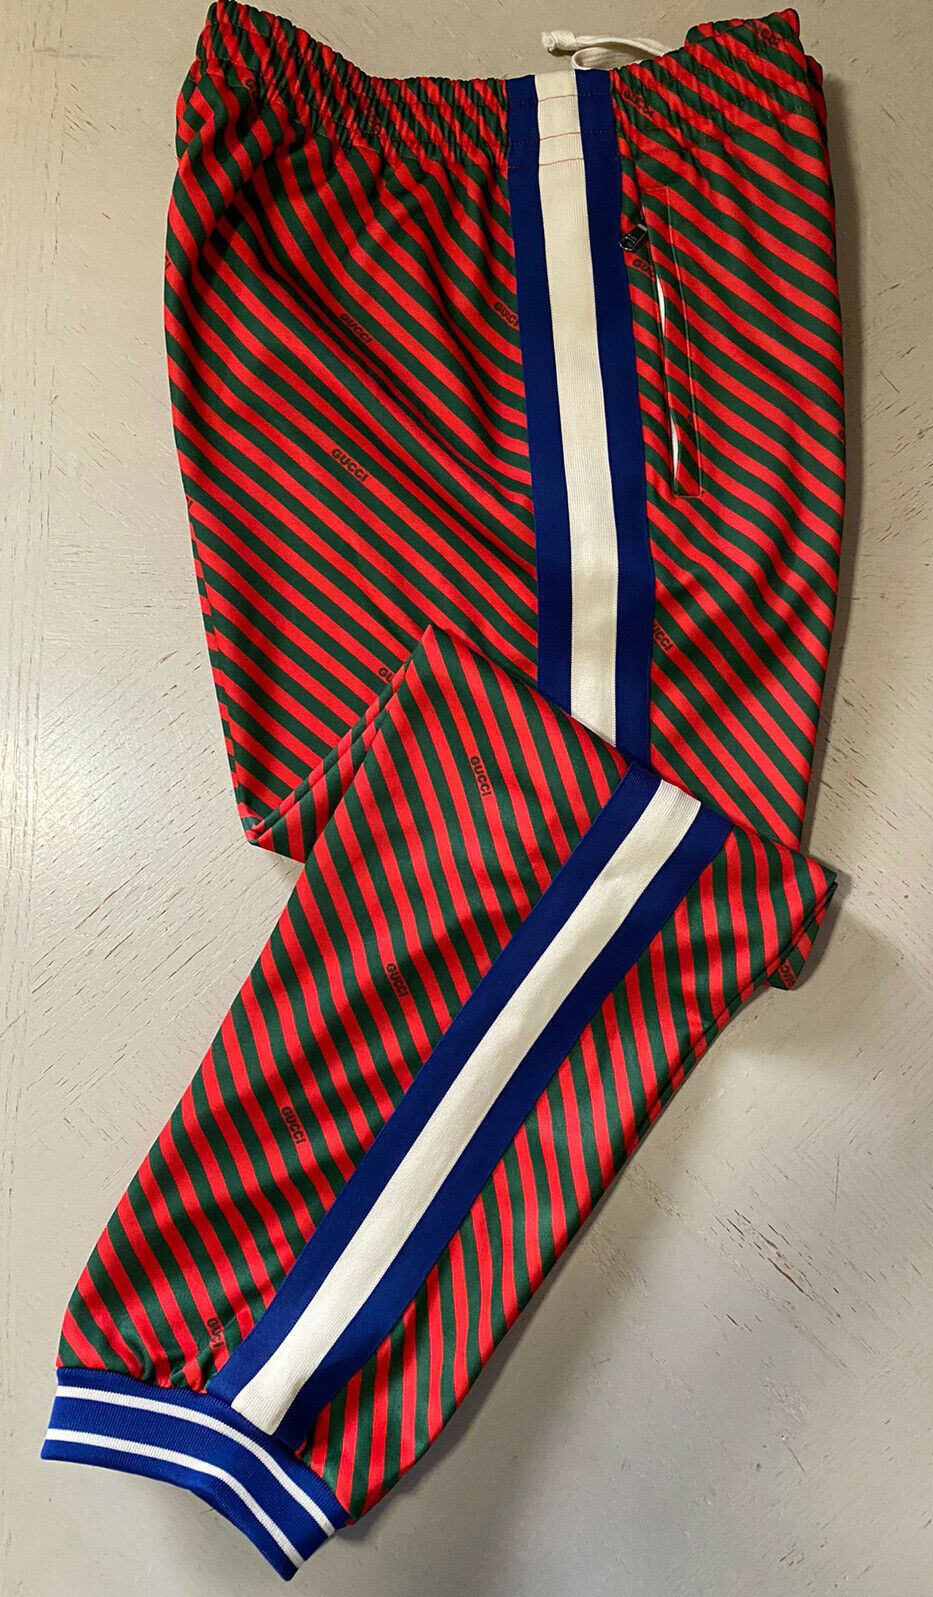 Новые мужские спортивные штаны Gucci синего/красного/зеленого цвета за 1500 долларов, размер XXL, Италия